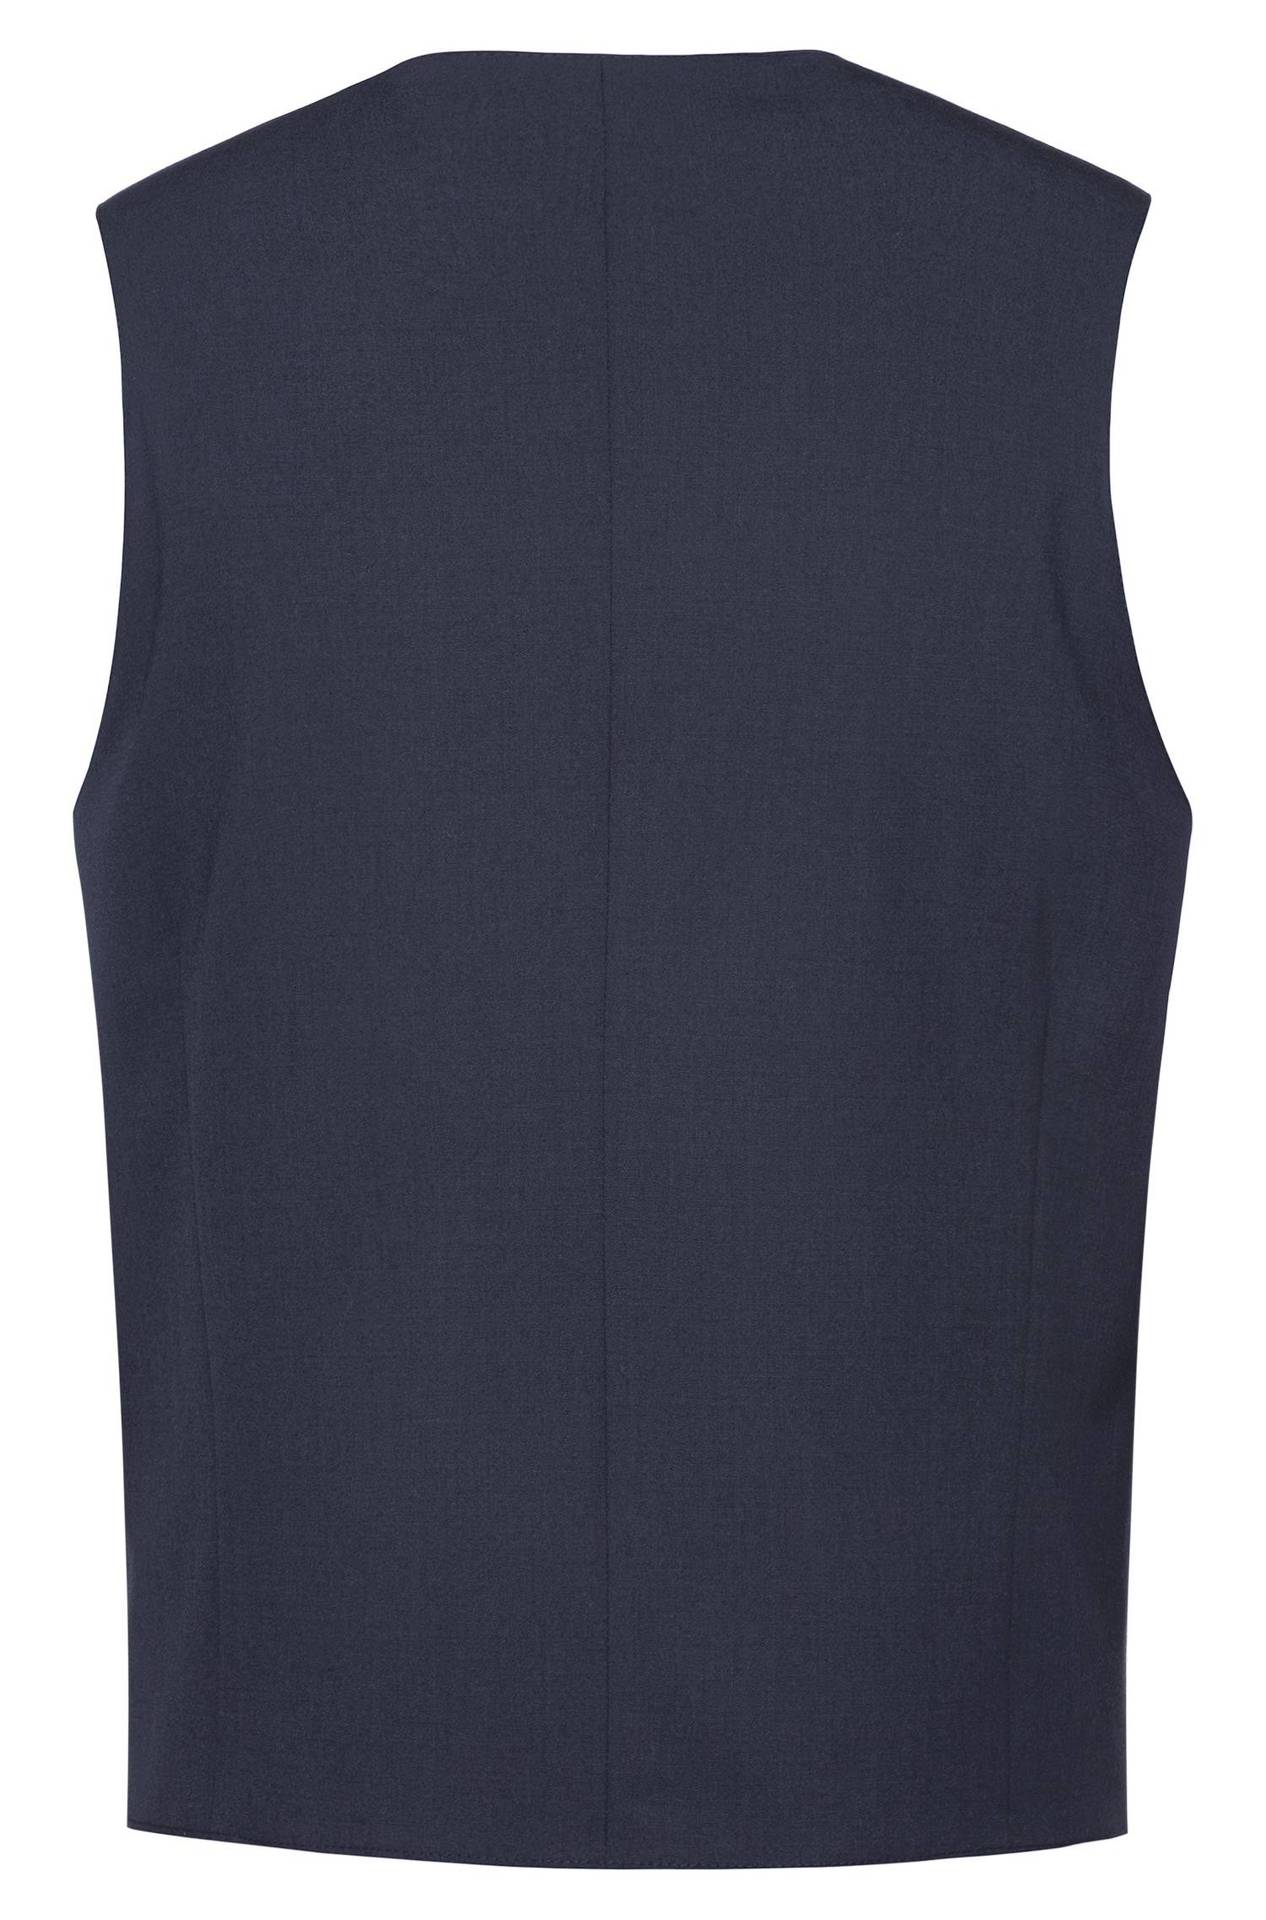 Men's waistcoat 4-button PREMIUM regular fit - Color: Navy blue | Size: 46